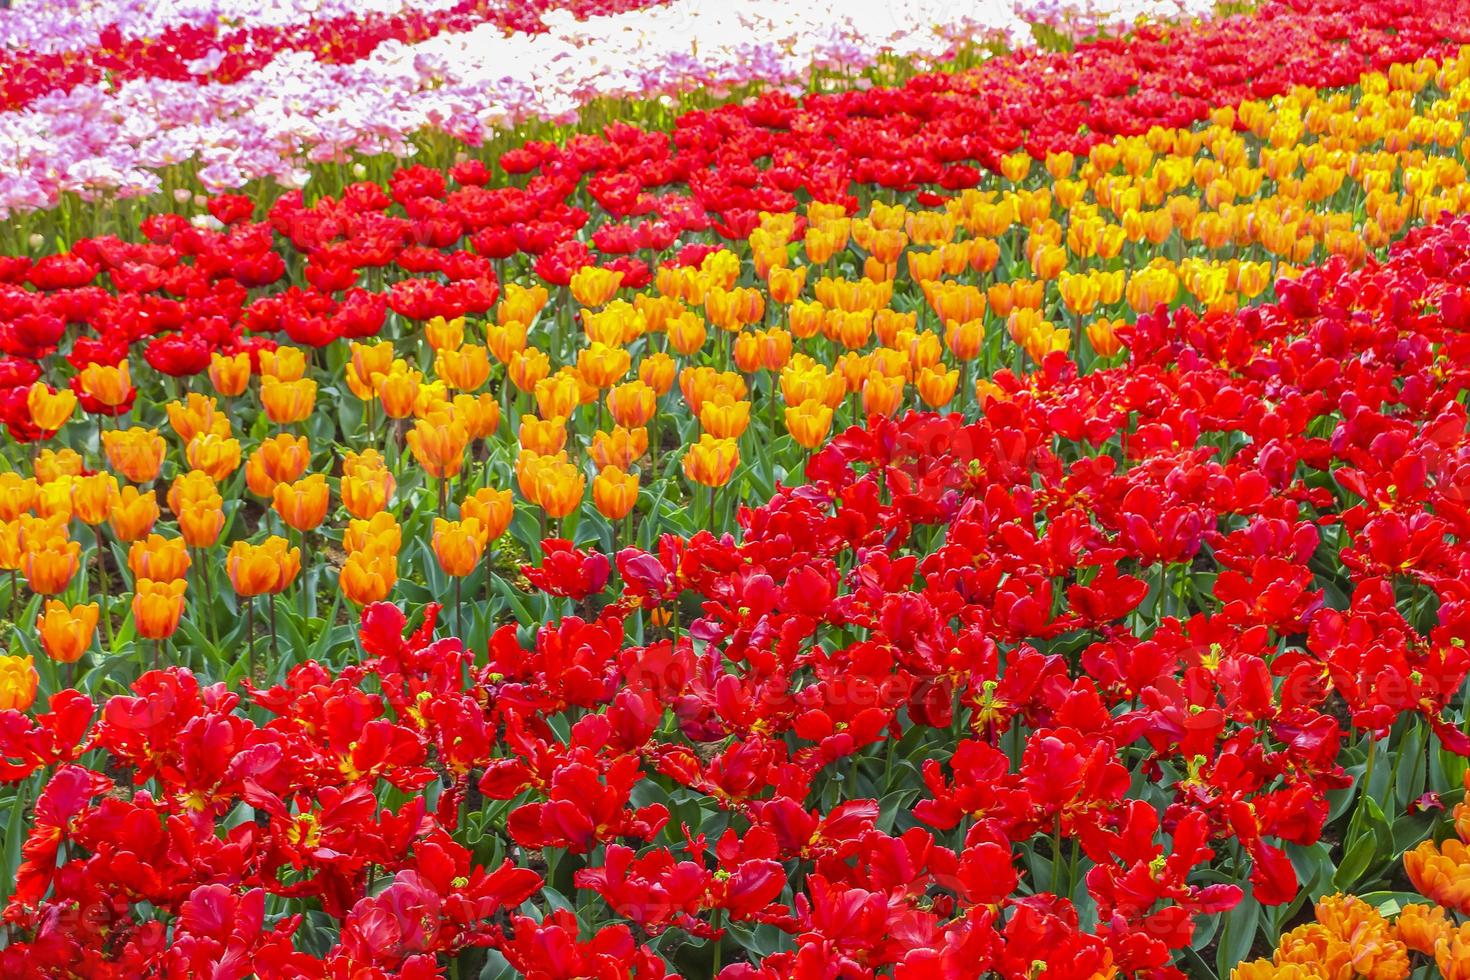 coloridos tulipanes narcisos en el parque keukenhof lisse holanda países bajos. foto